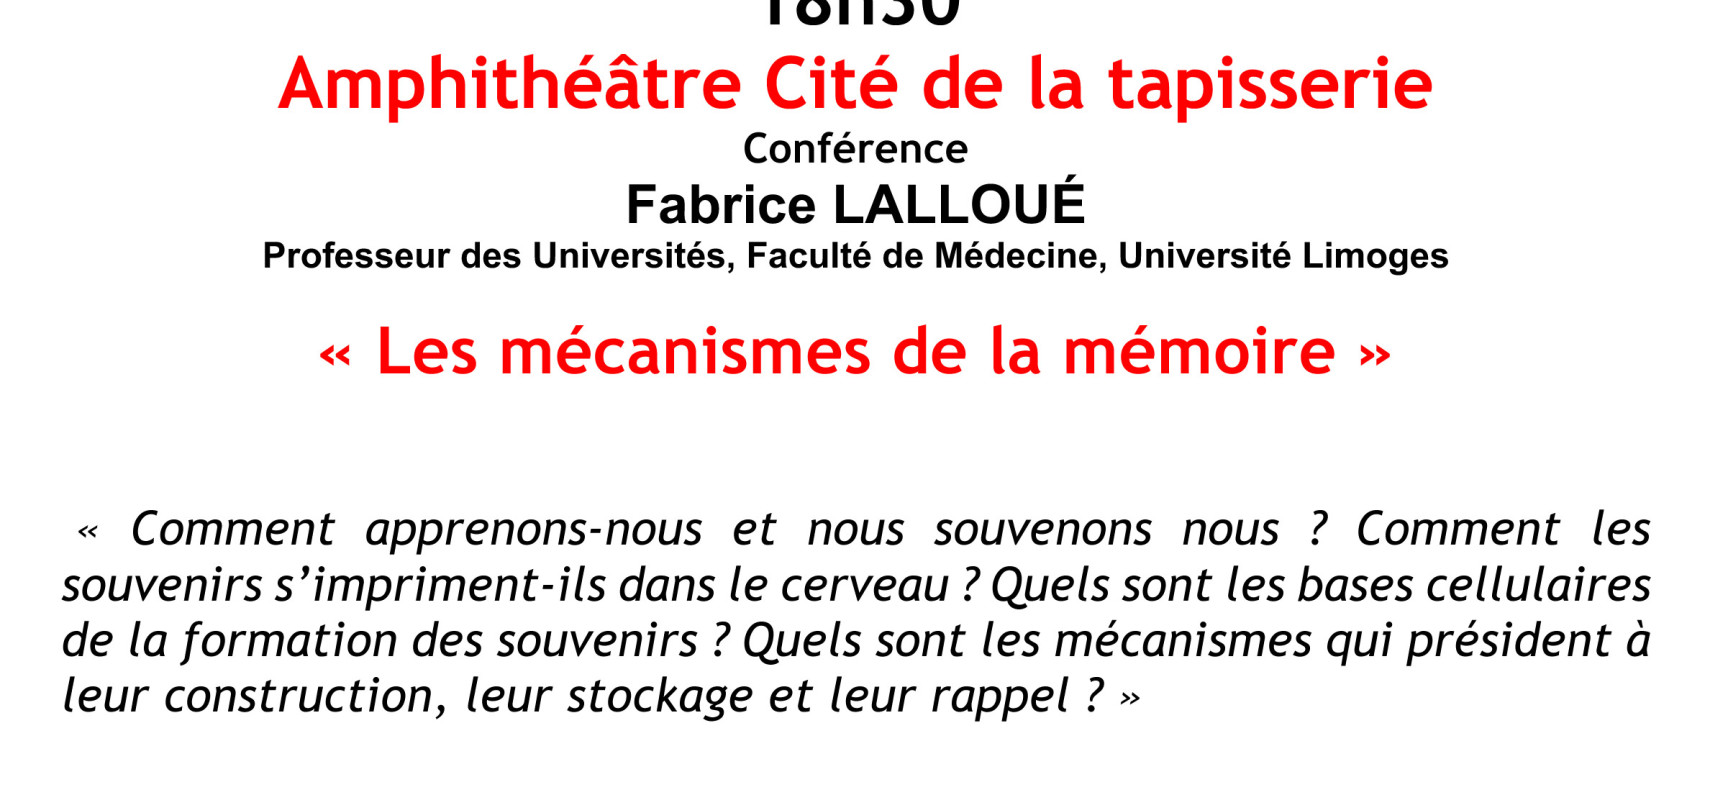 Conférence – « Les mécanismes de la mémoire » #LaSemaineDuCerveau2019 #Aubusson